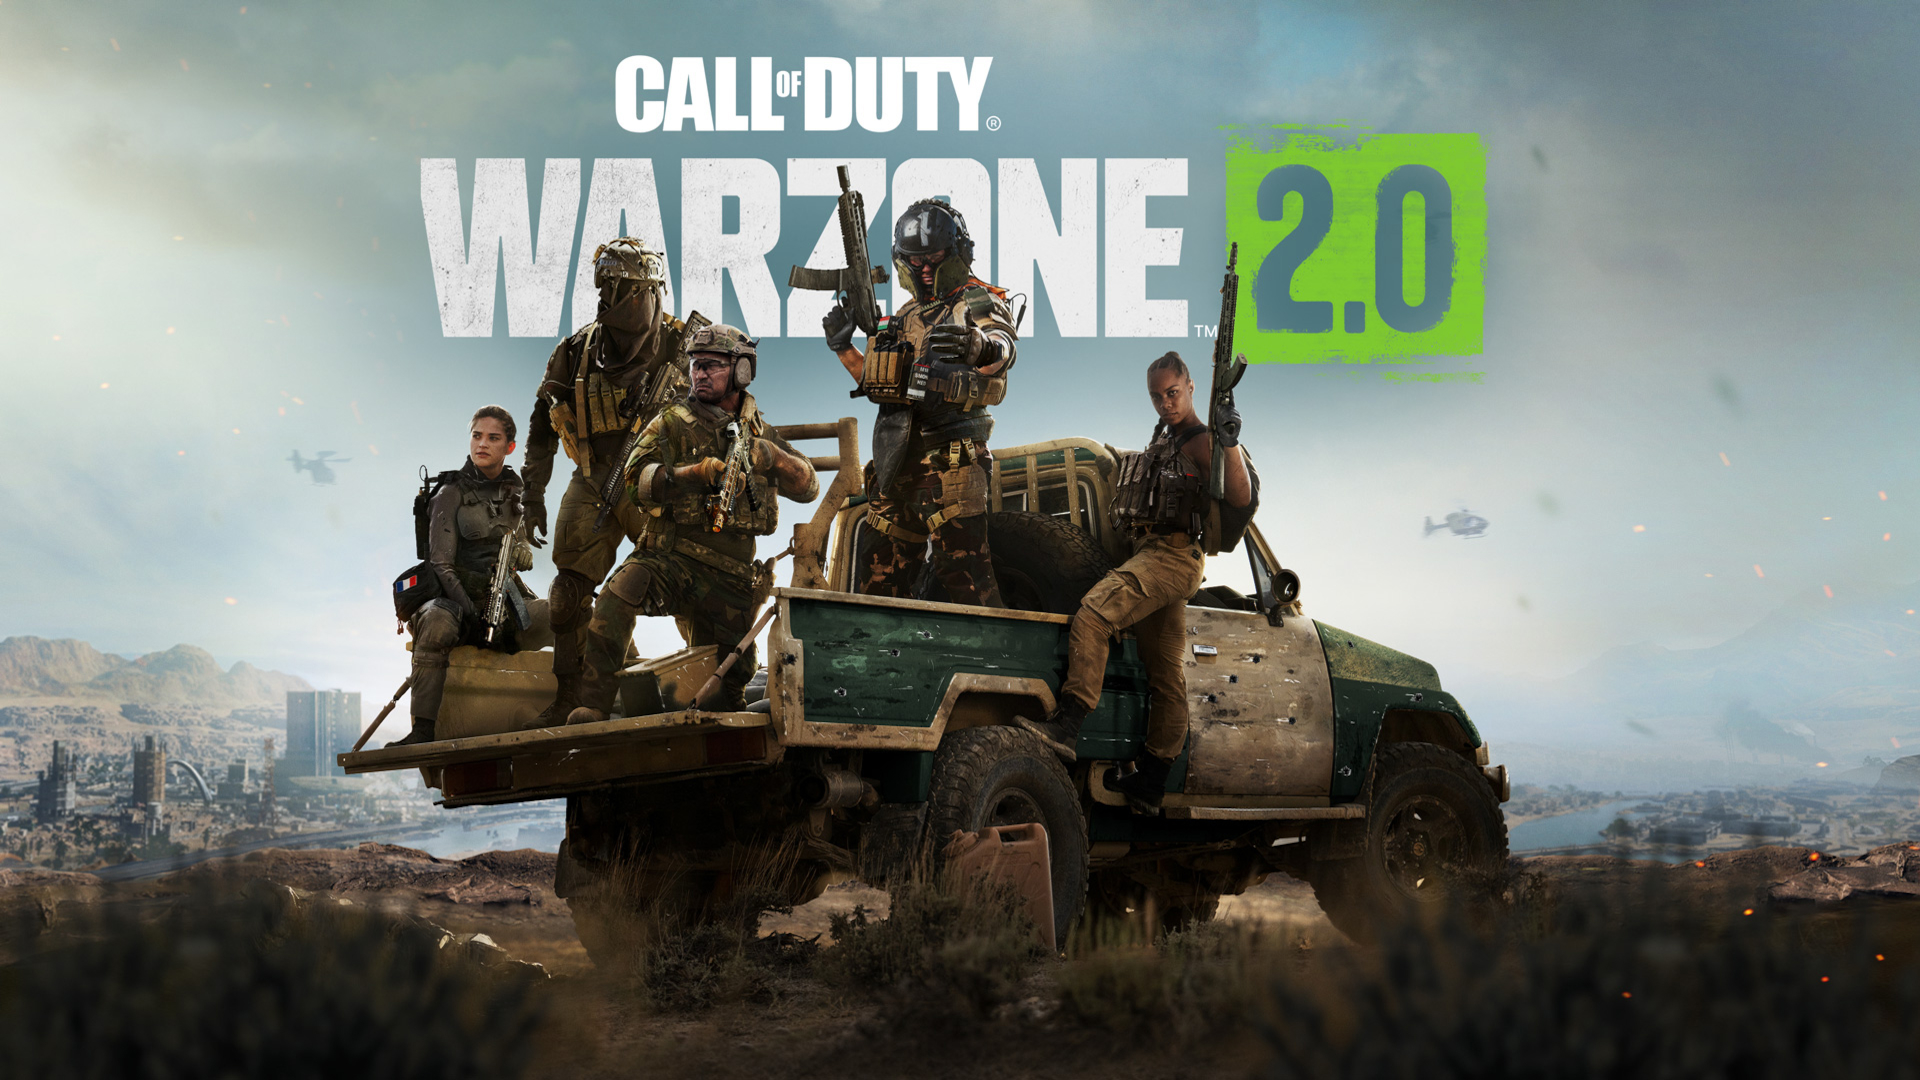 Call of Duty Warzone chuẩn bị giới thiệu thêm chế độ Duo và Squad trong các  phiên bản sắp tới